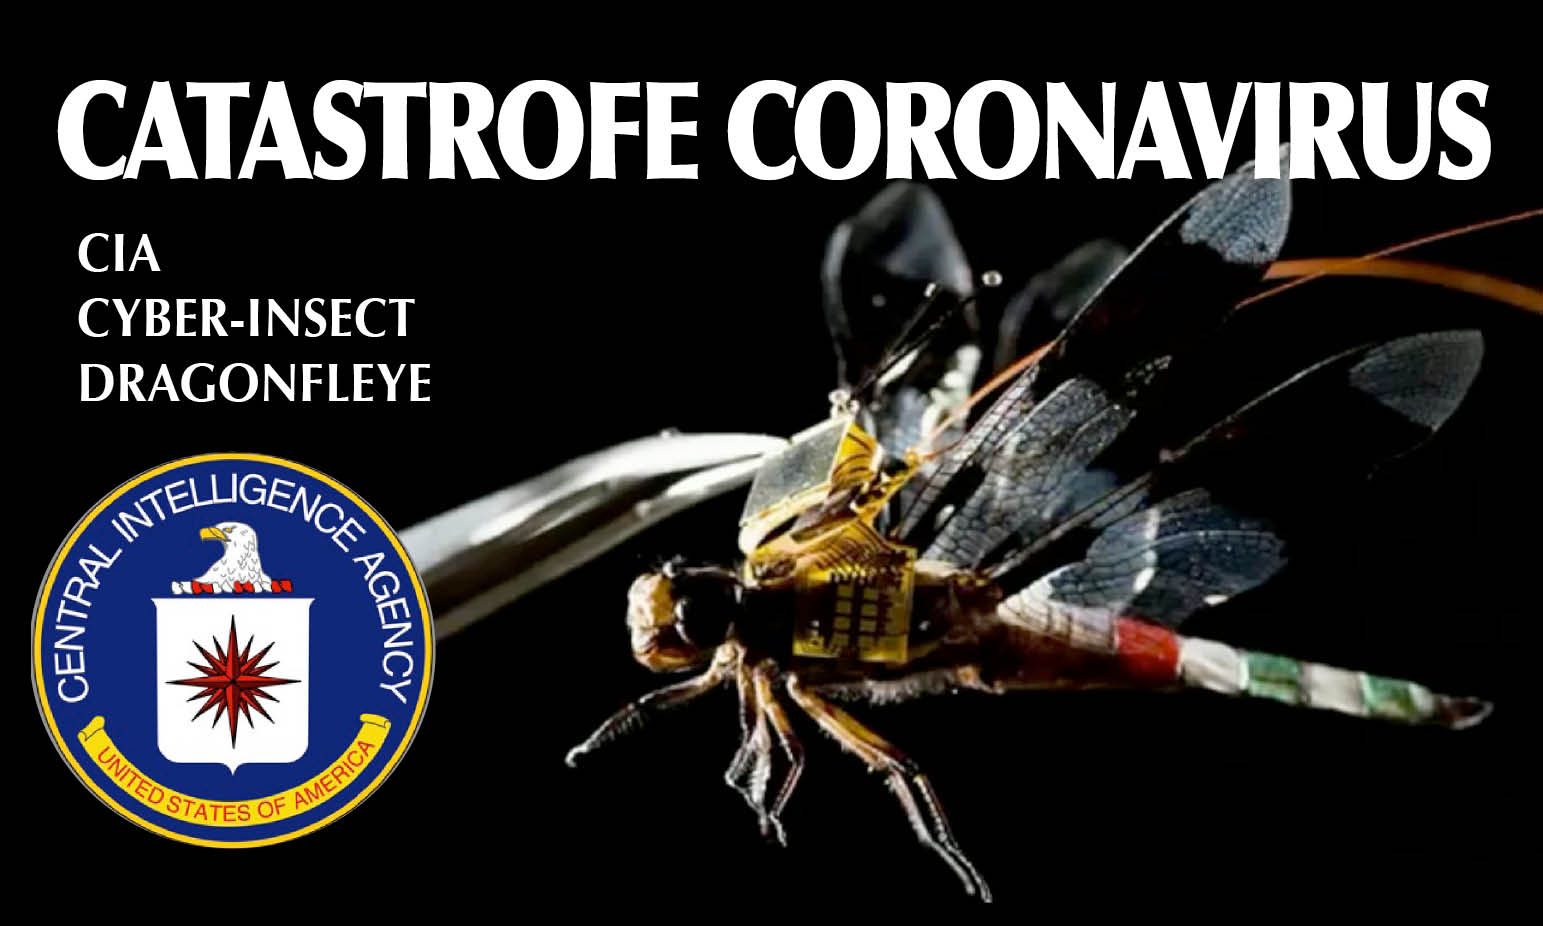 CoronaVirus – 2. ARMA BIO-GENETICA. Gli 007: «Diffusa coi nano-droni CIA» e Cyber-libellule. Strage in Iran. SOS Italia